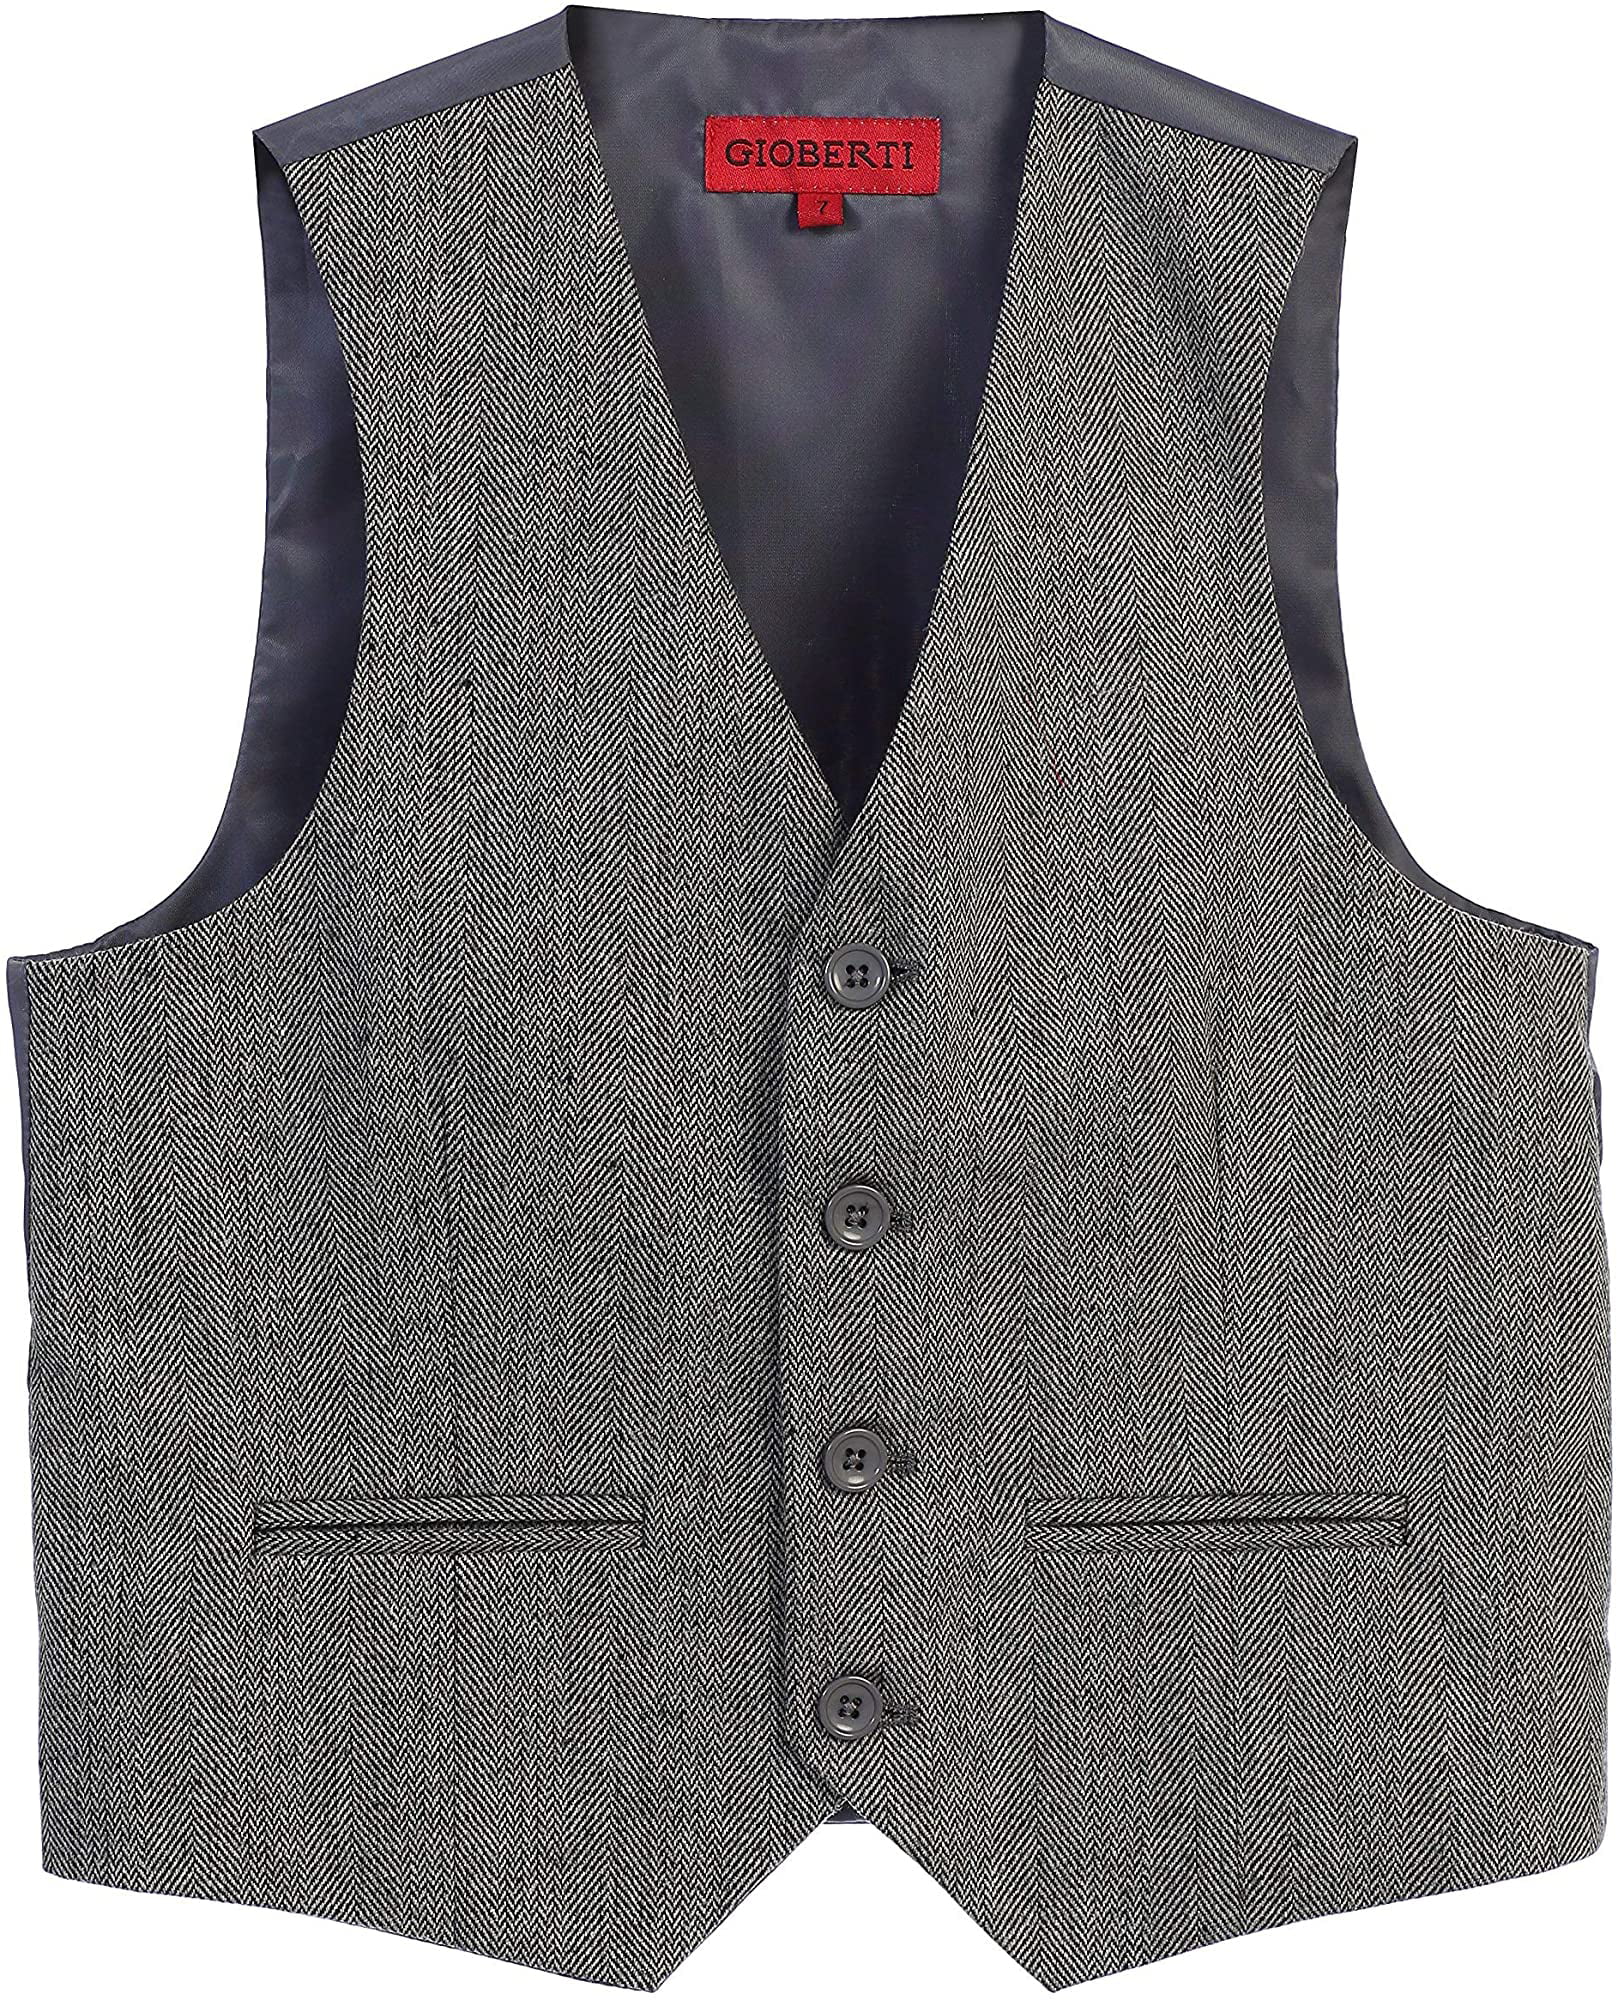 Gioberti Boy's Tweed Plaid Formal Suit Vest 